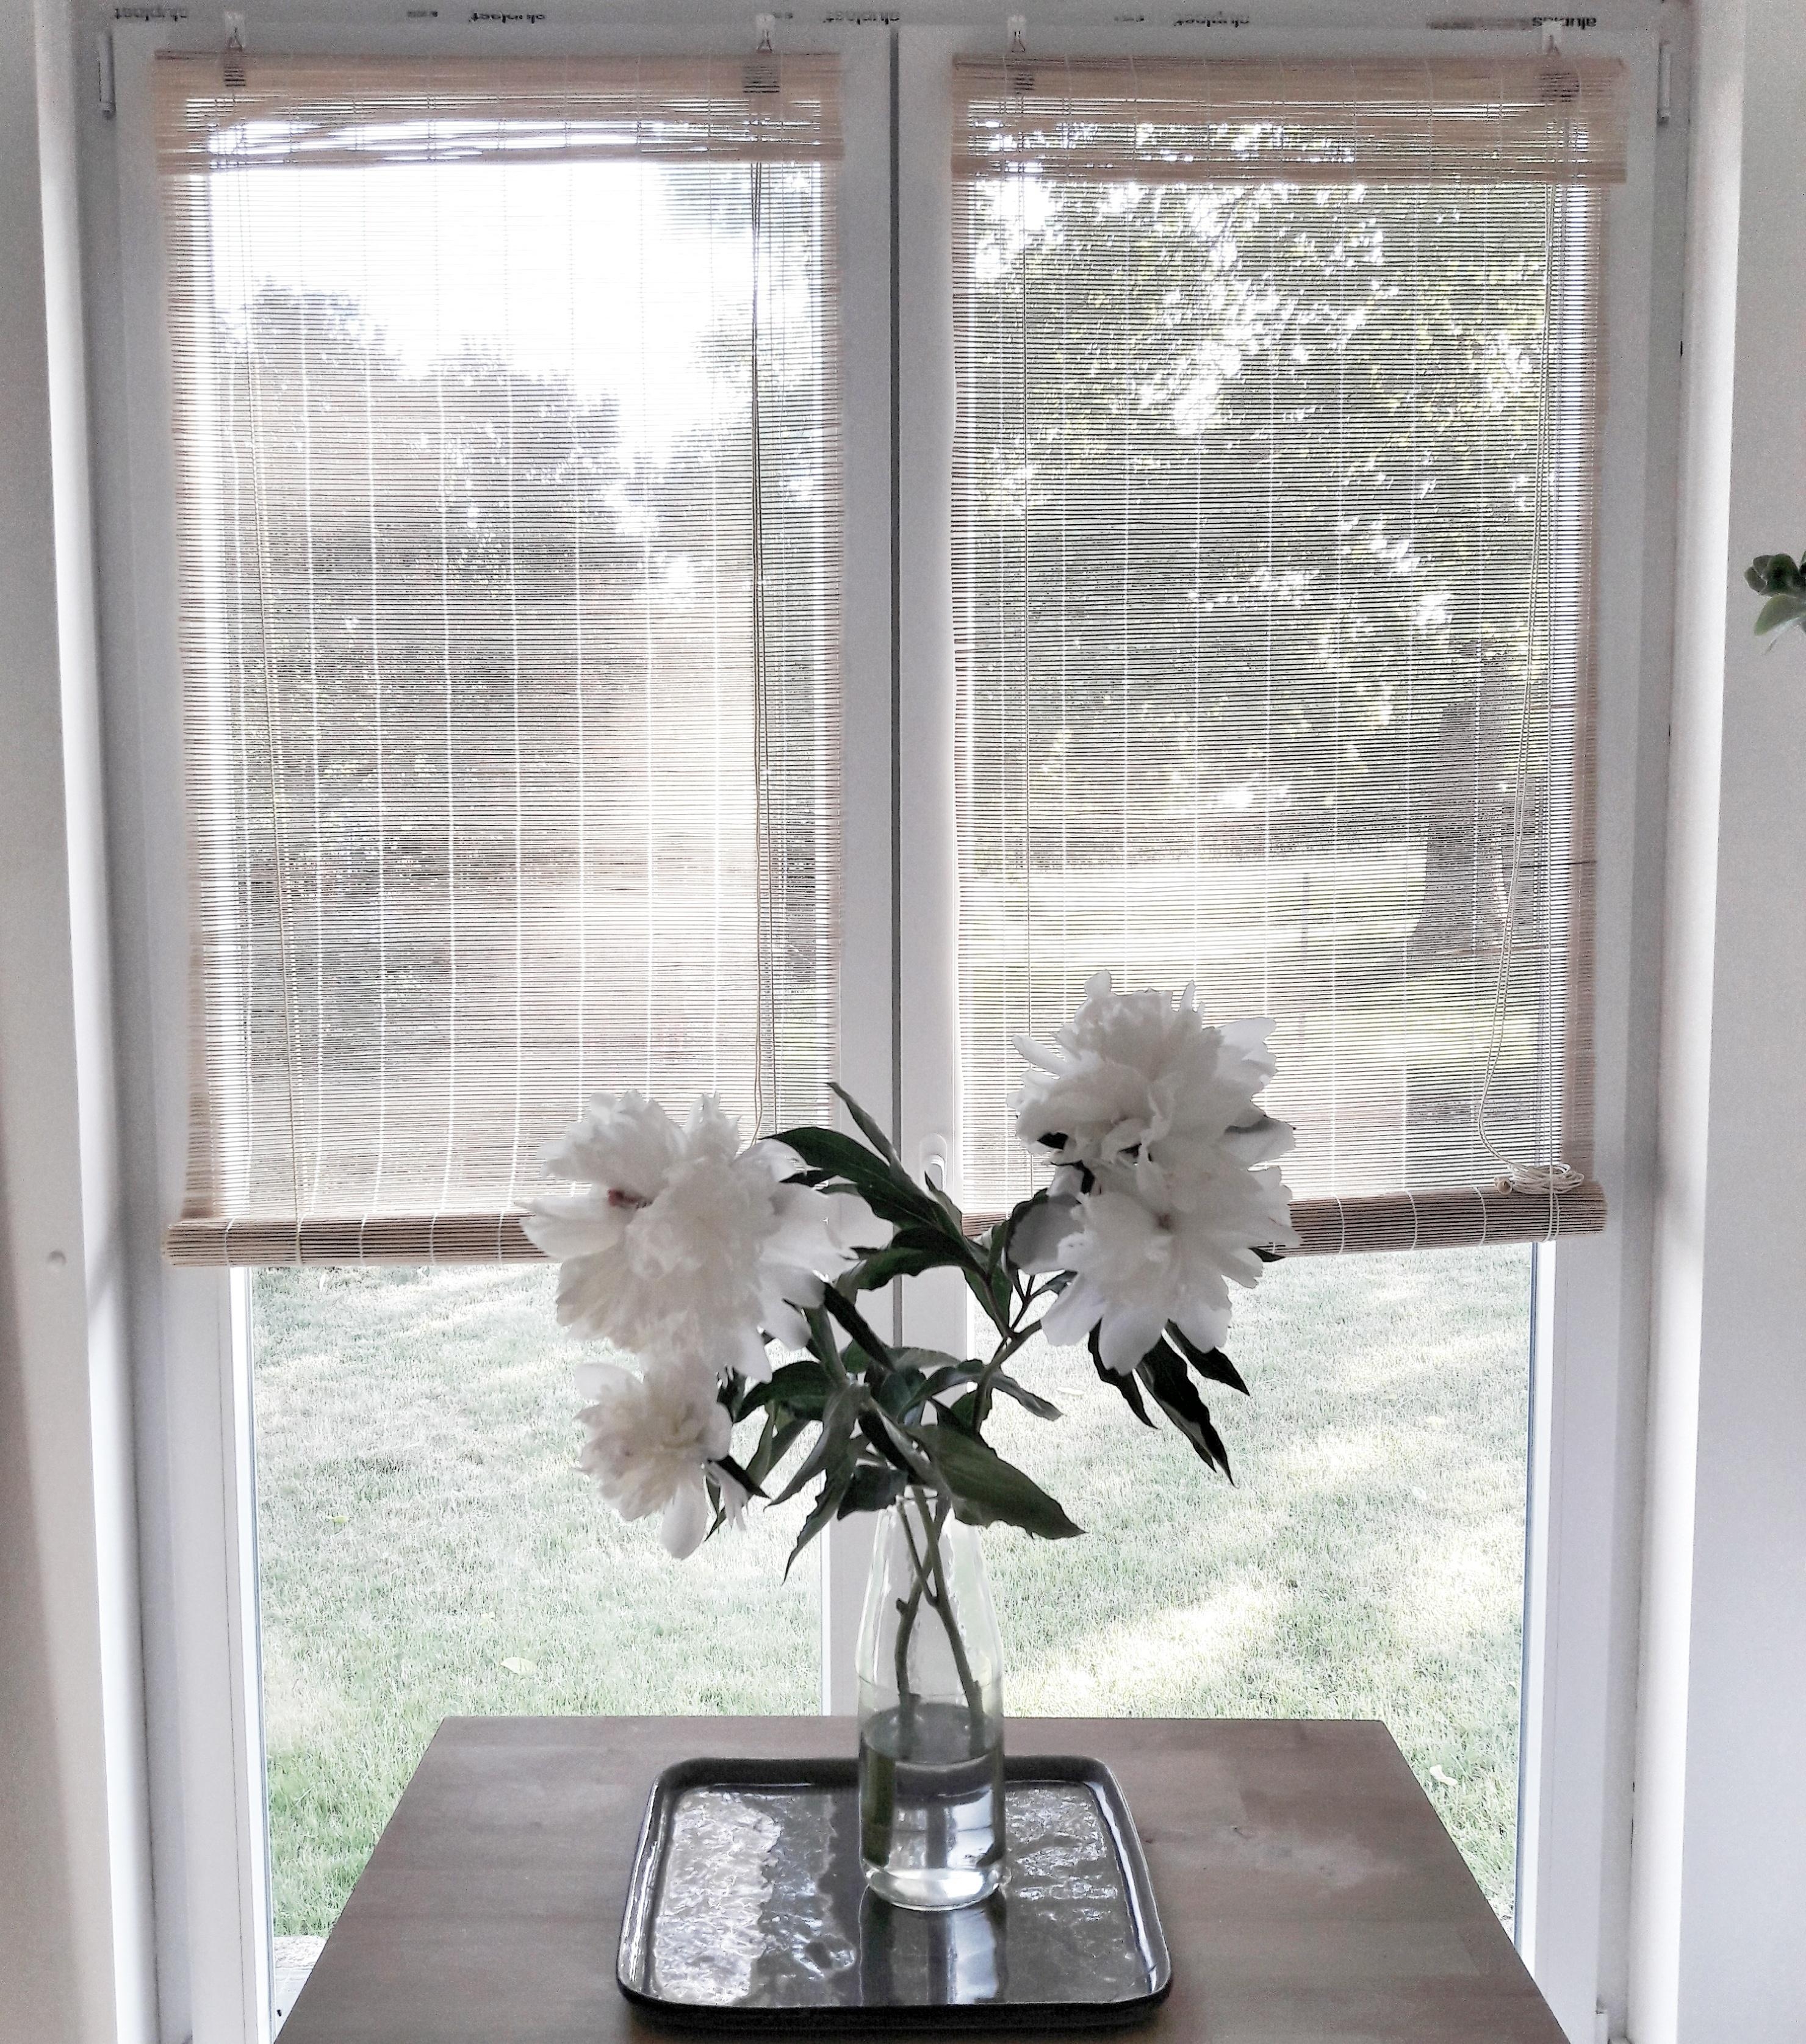 Das alte Fenster in der Küche wurde durch eine große Terrassentür ersetzt
#freshflowers #windowview